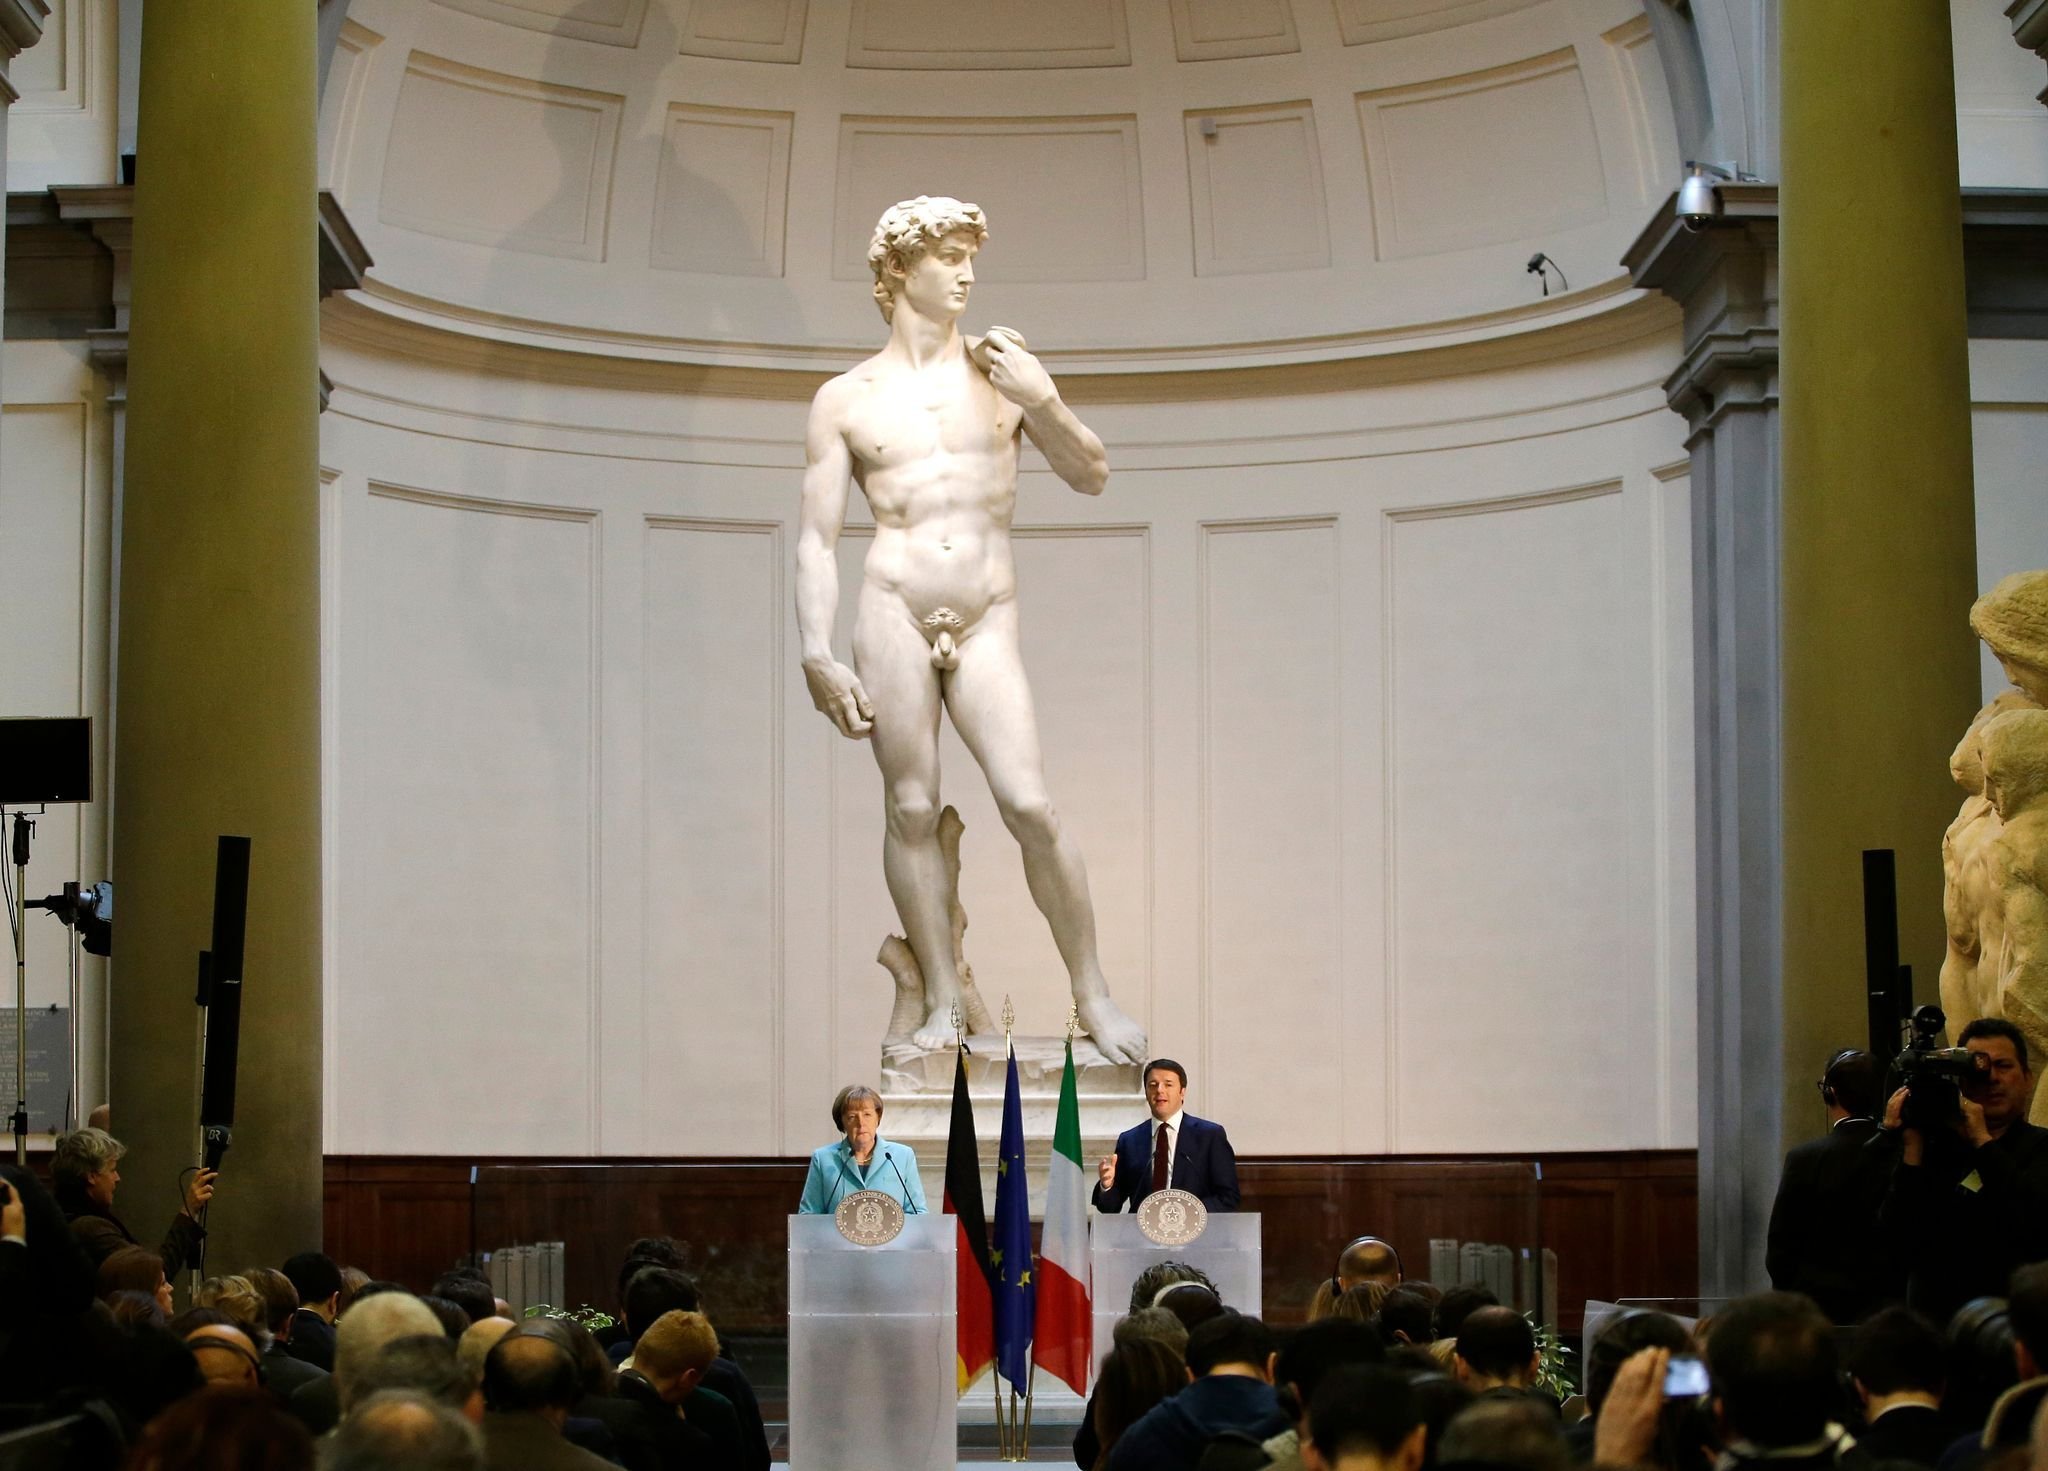 Kündigung wegen David–Statue? — Bürgermeister meldet sich